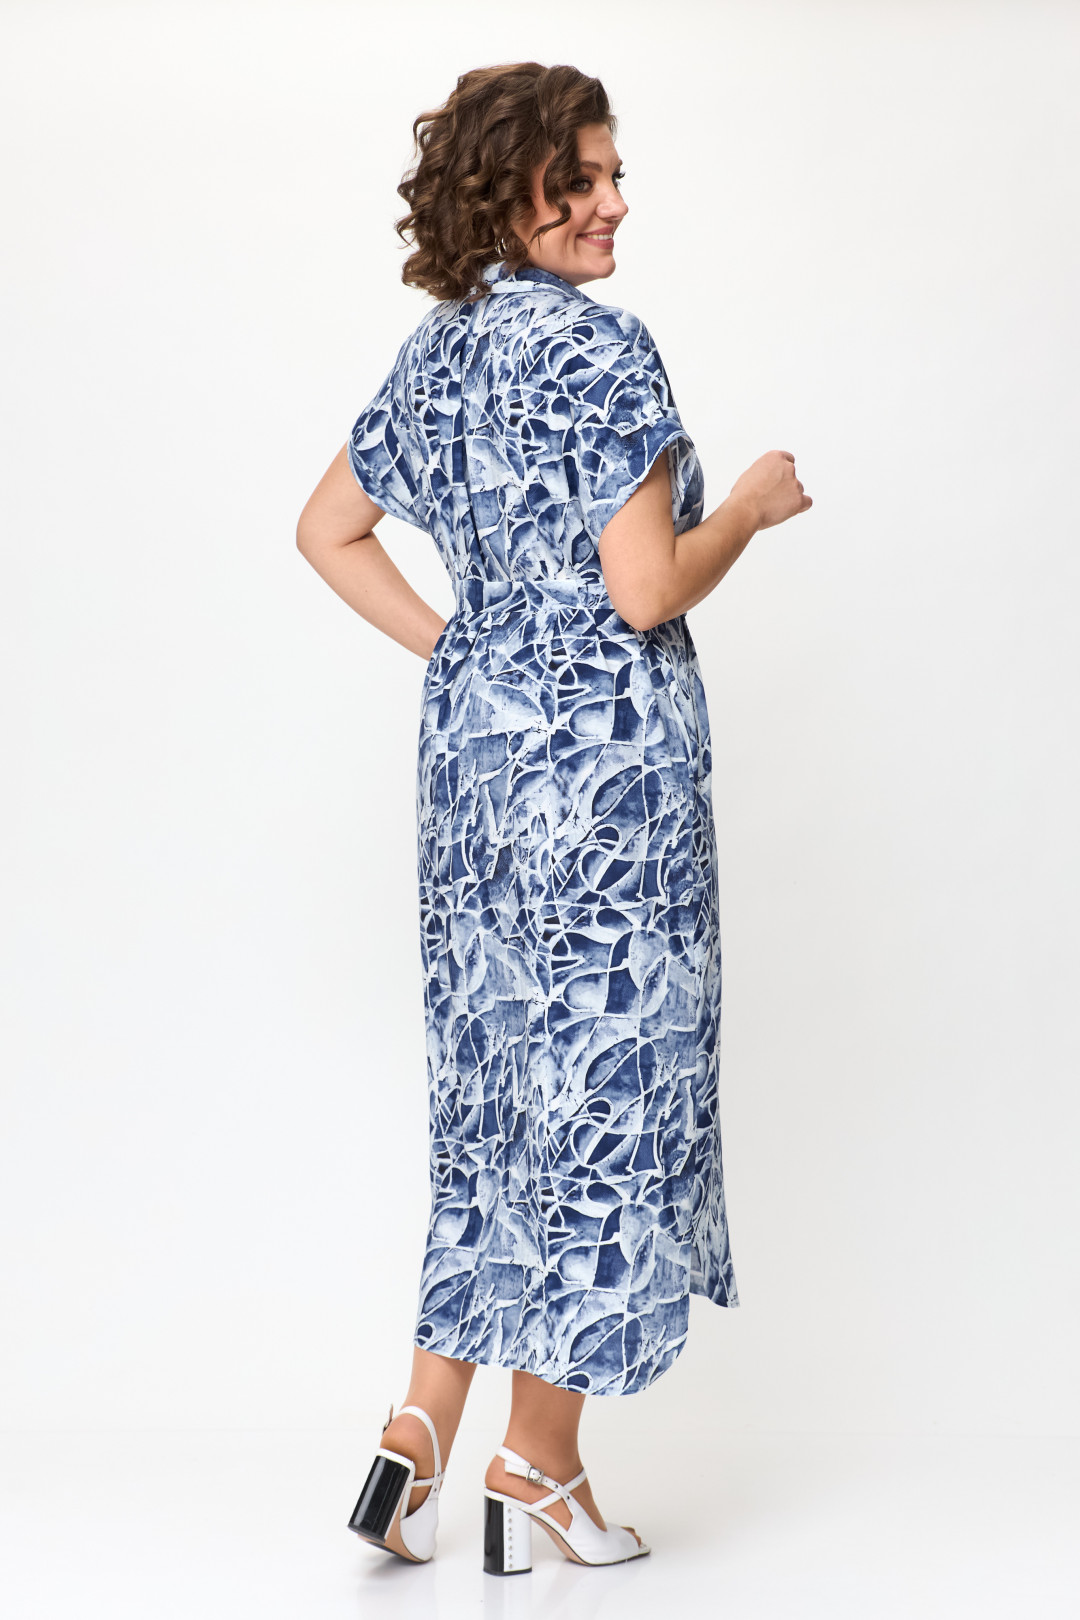 Платье Мишель Шик 993/1 синий, белый